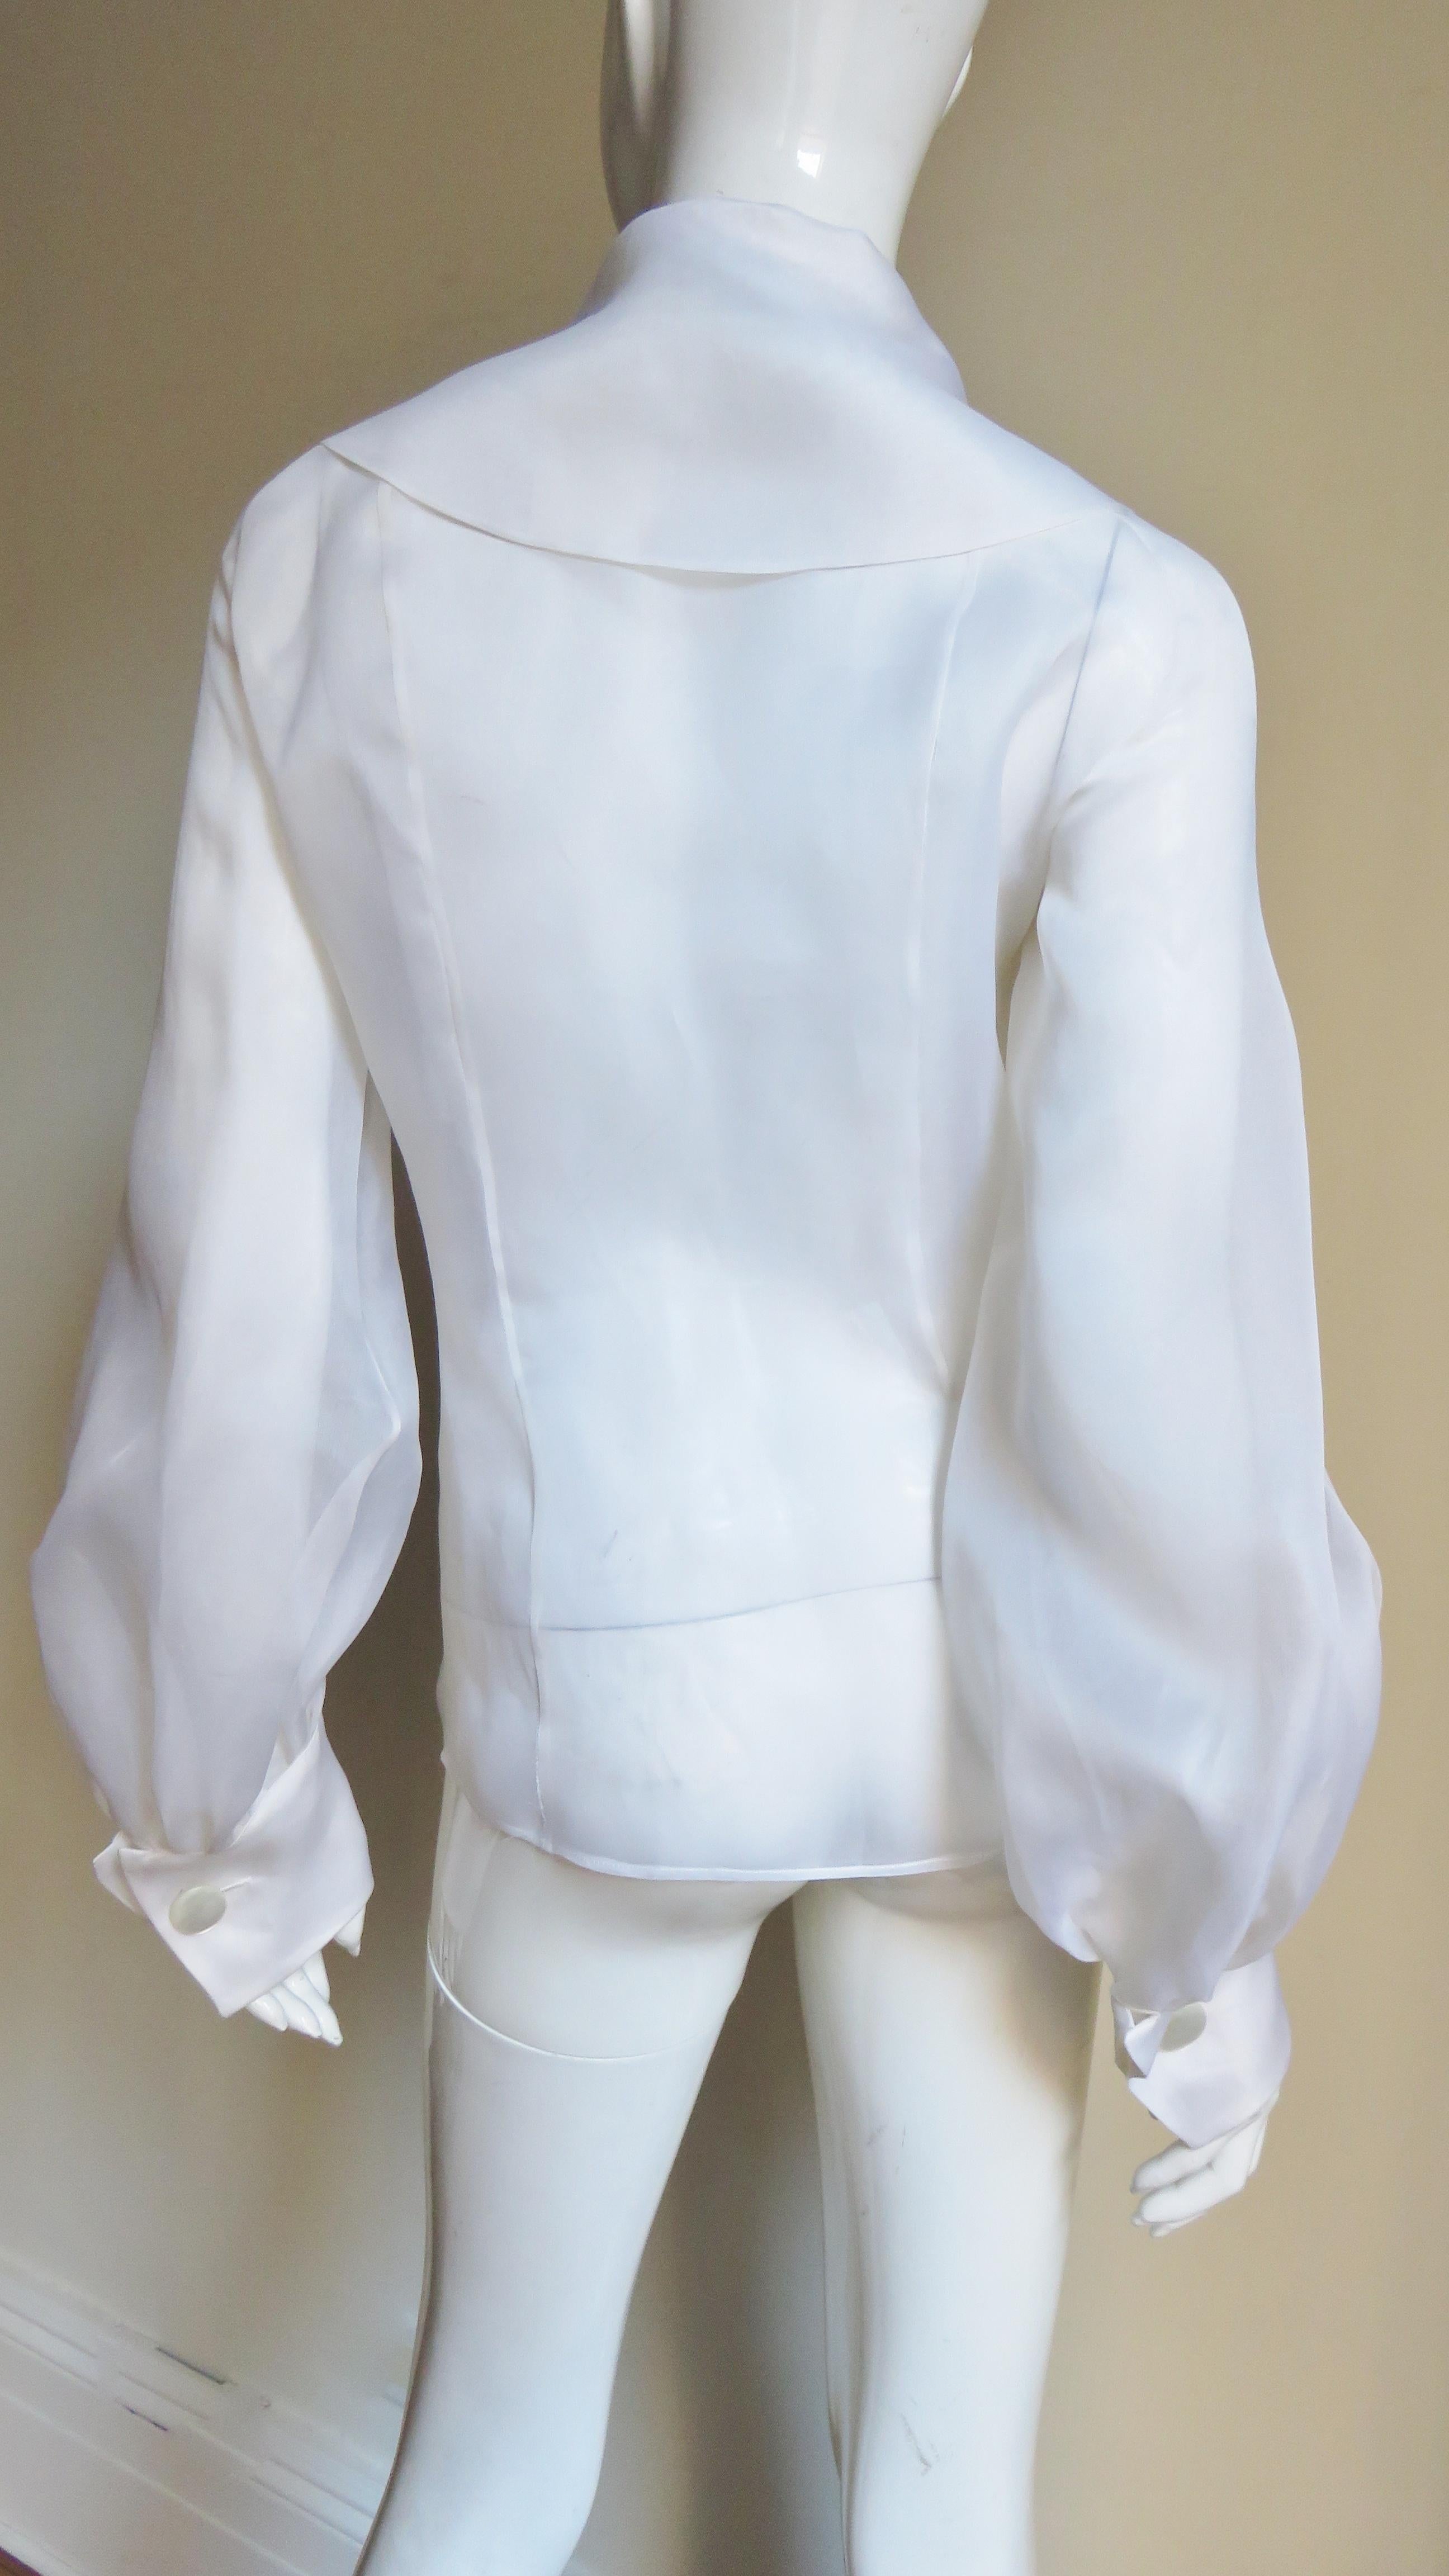  Emmanuelle Khanh White Silk Blouse Shirt 1980s For Sale 1